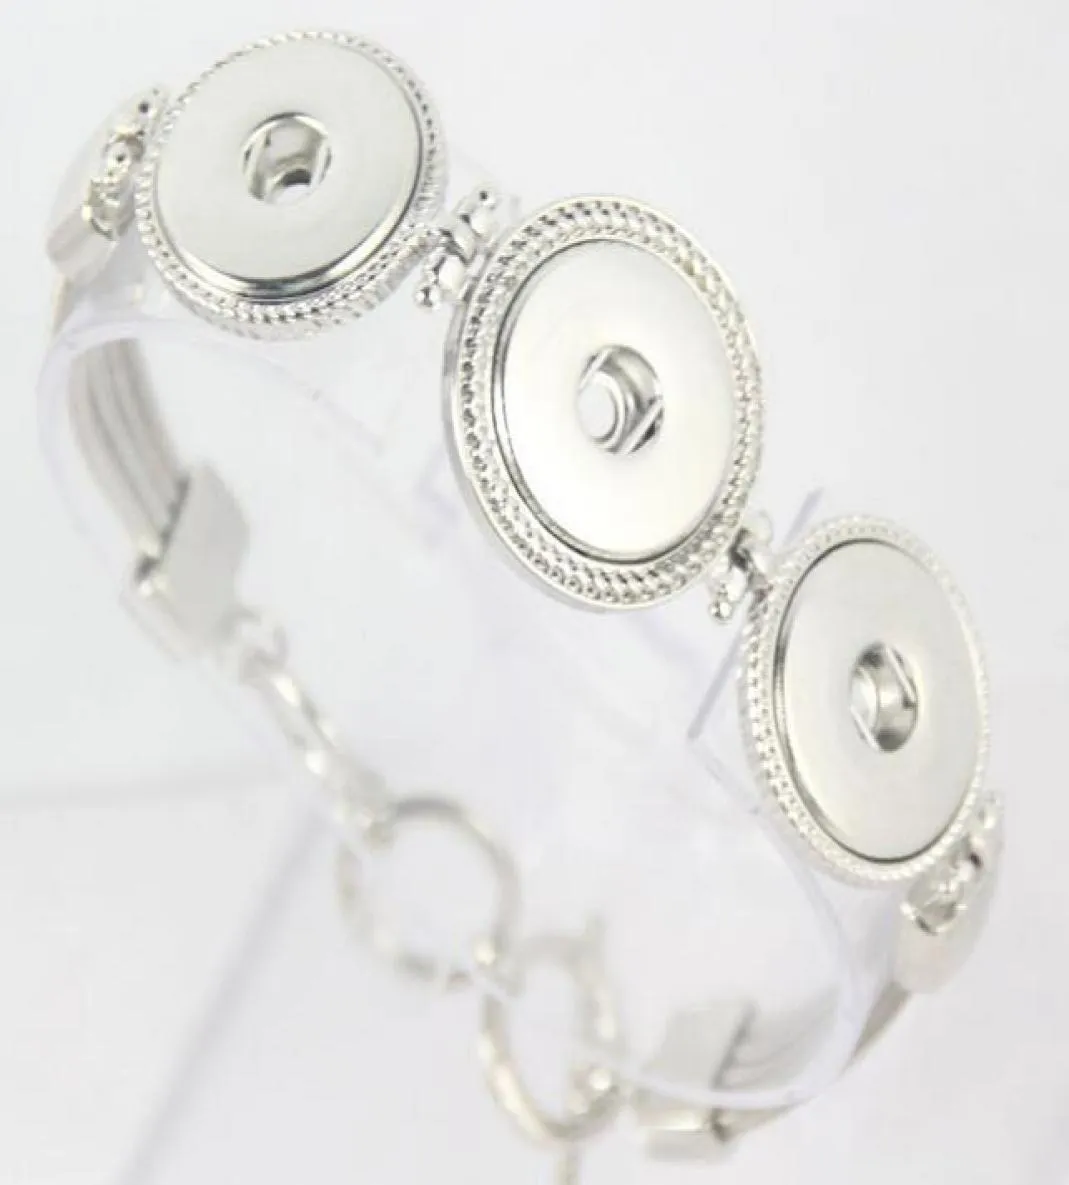 Snap Charm Jewelry Metal Button Bracelet 2020 BILLES ALLIAGES DIY BUTON SNAP MIELLRIE FAIME DIRECT WHOLES4277697